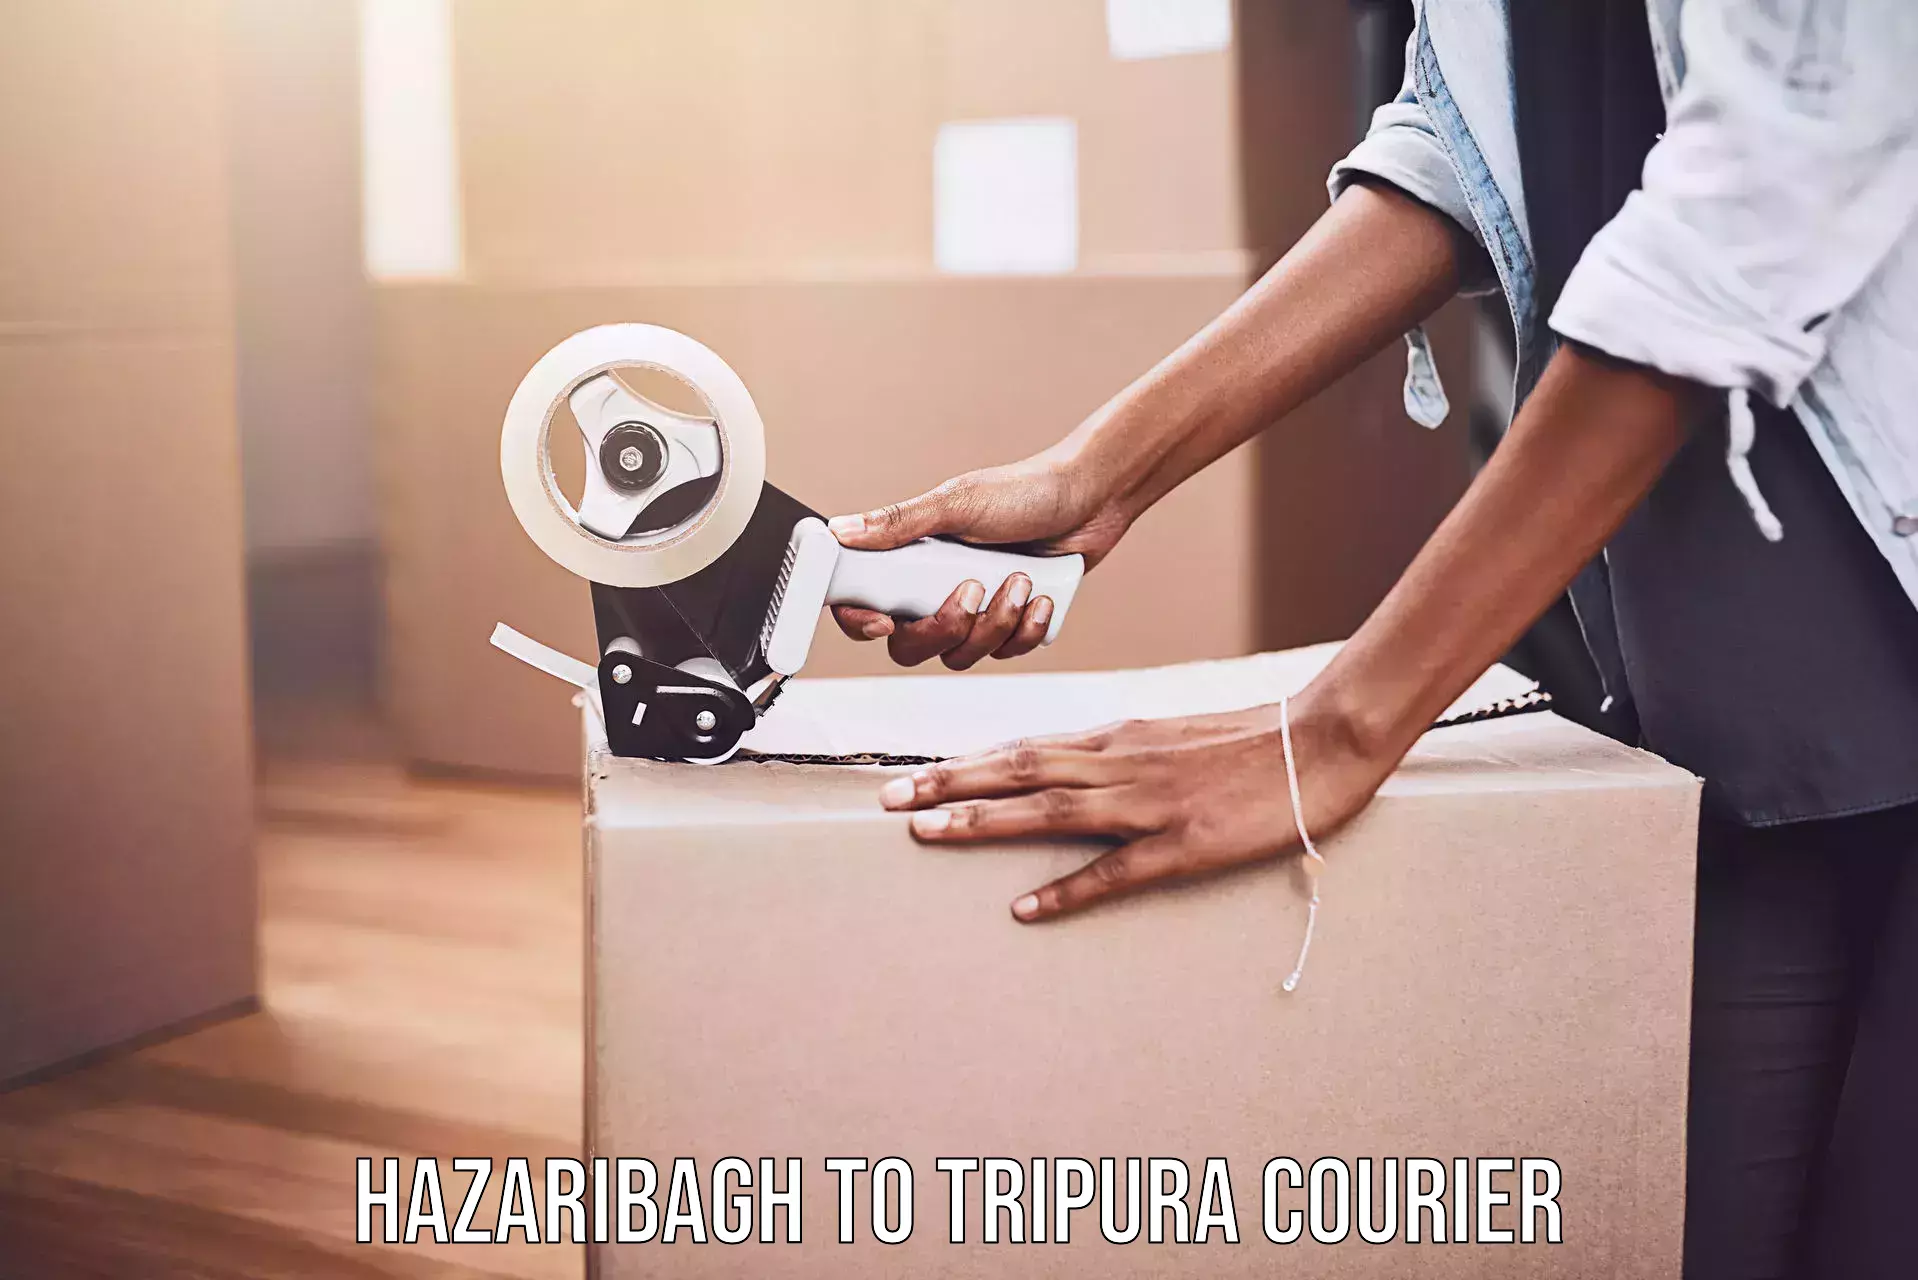 Weekend courier service Hazaribagh to Amarpur